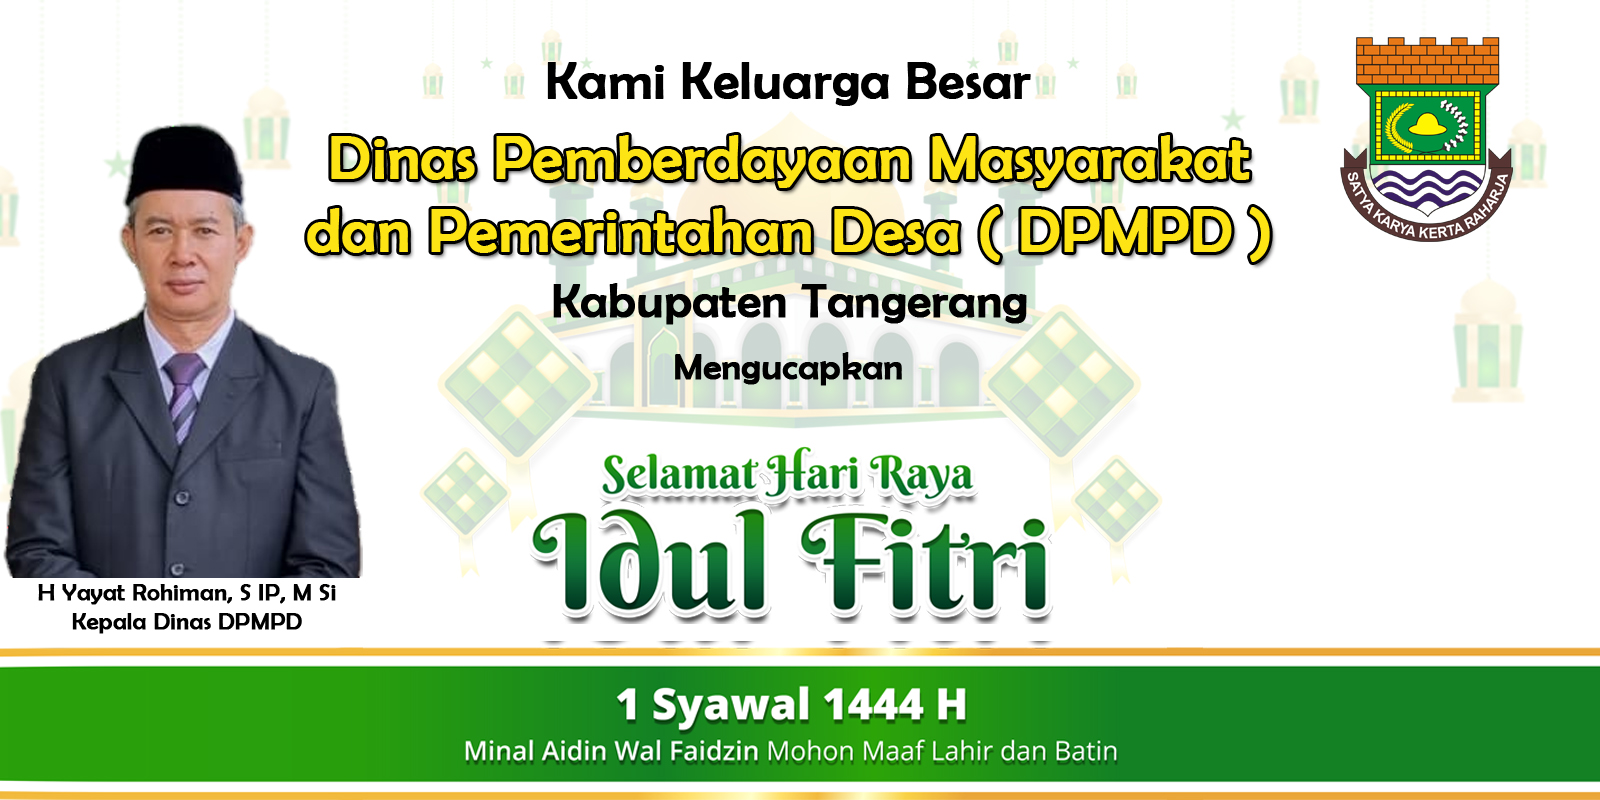 Dinas Pemberdayaan Masyarakat dan Pemerintahan Desa (DPMPD) Kabupaten Tangerang